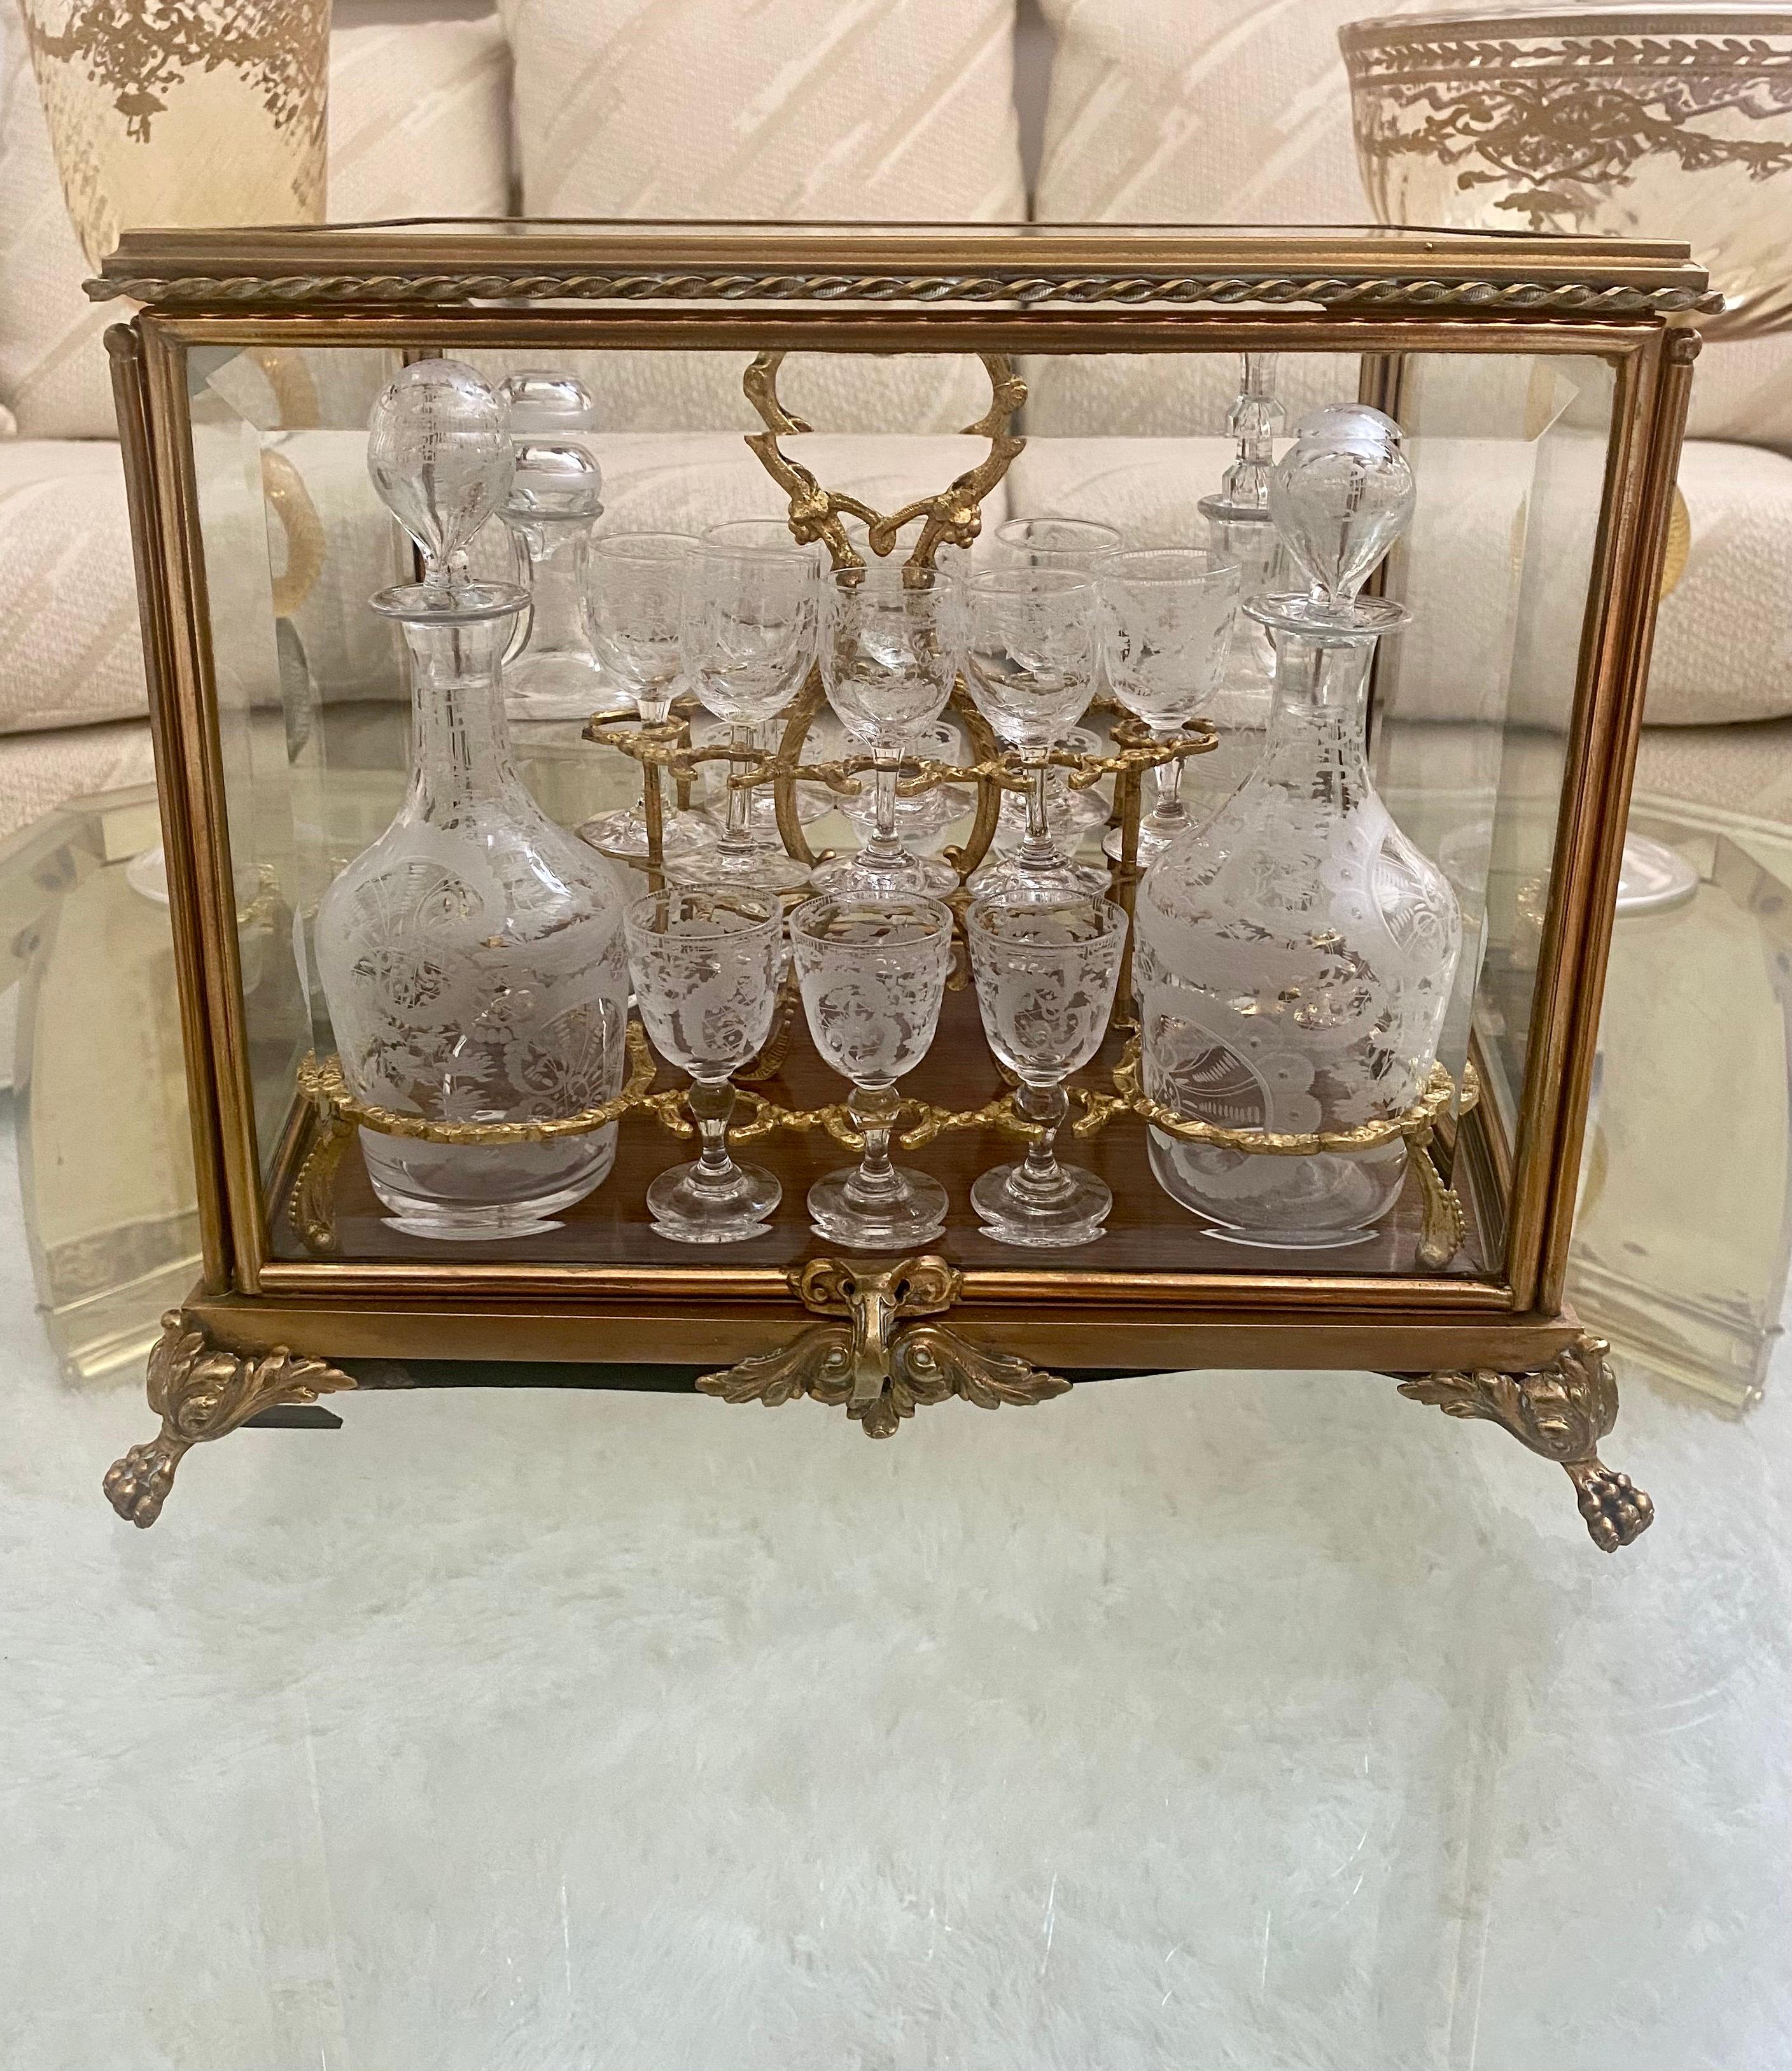 Set de verres en bronze doré et cristal gravé, dans le style de Baccarat. L'ensemble comprend quatorze verres et quatre carafes avec des embellissements gravés. L'ensemble est placé sur un pont élévateur  dorure personnalisée  à l'intérieur d'un